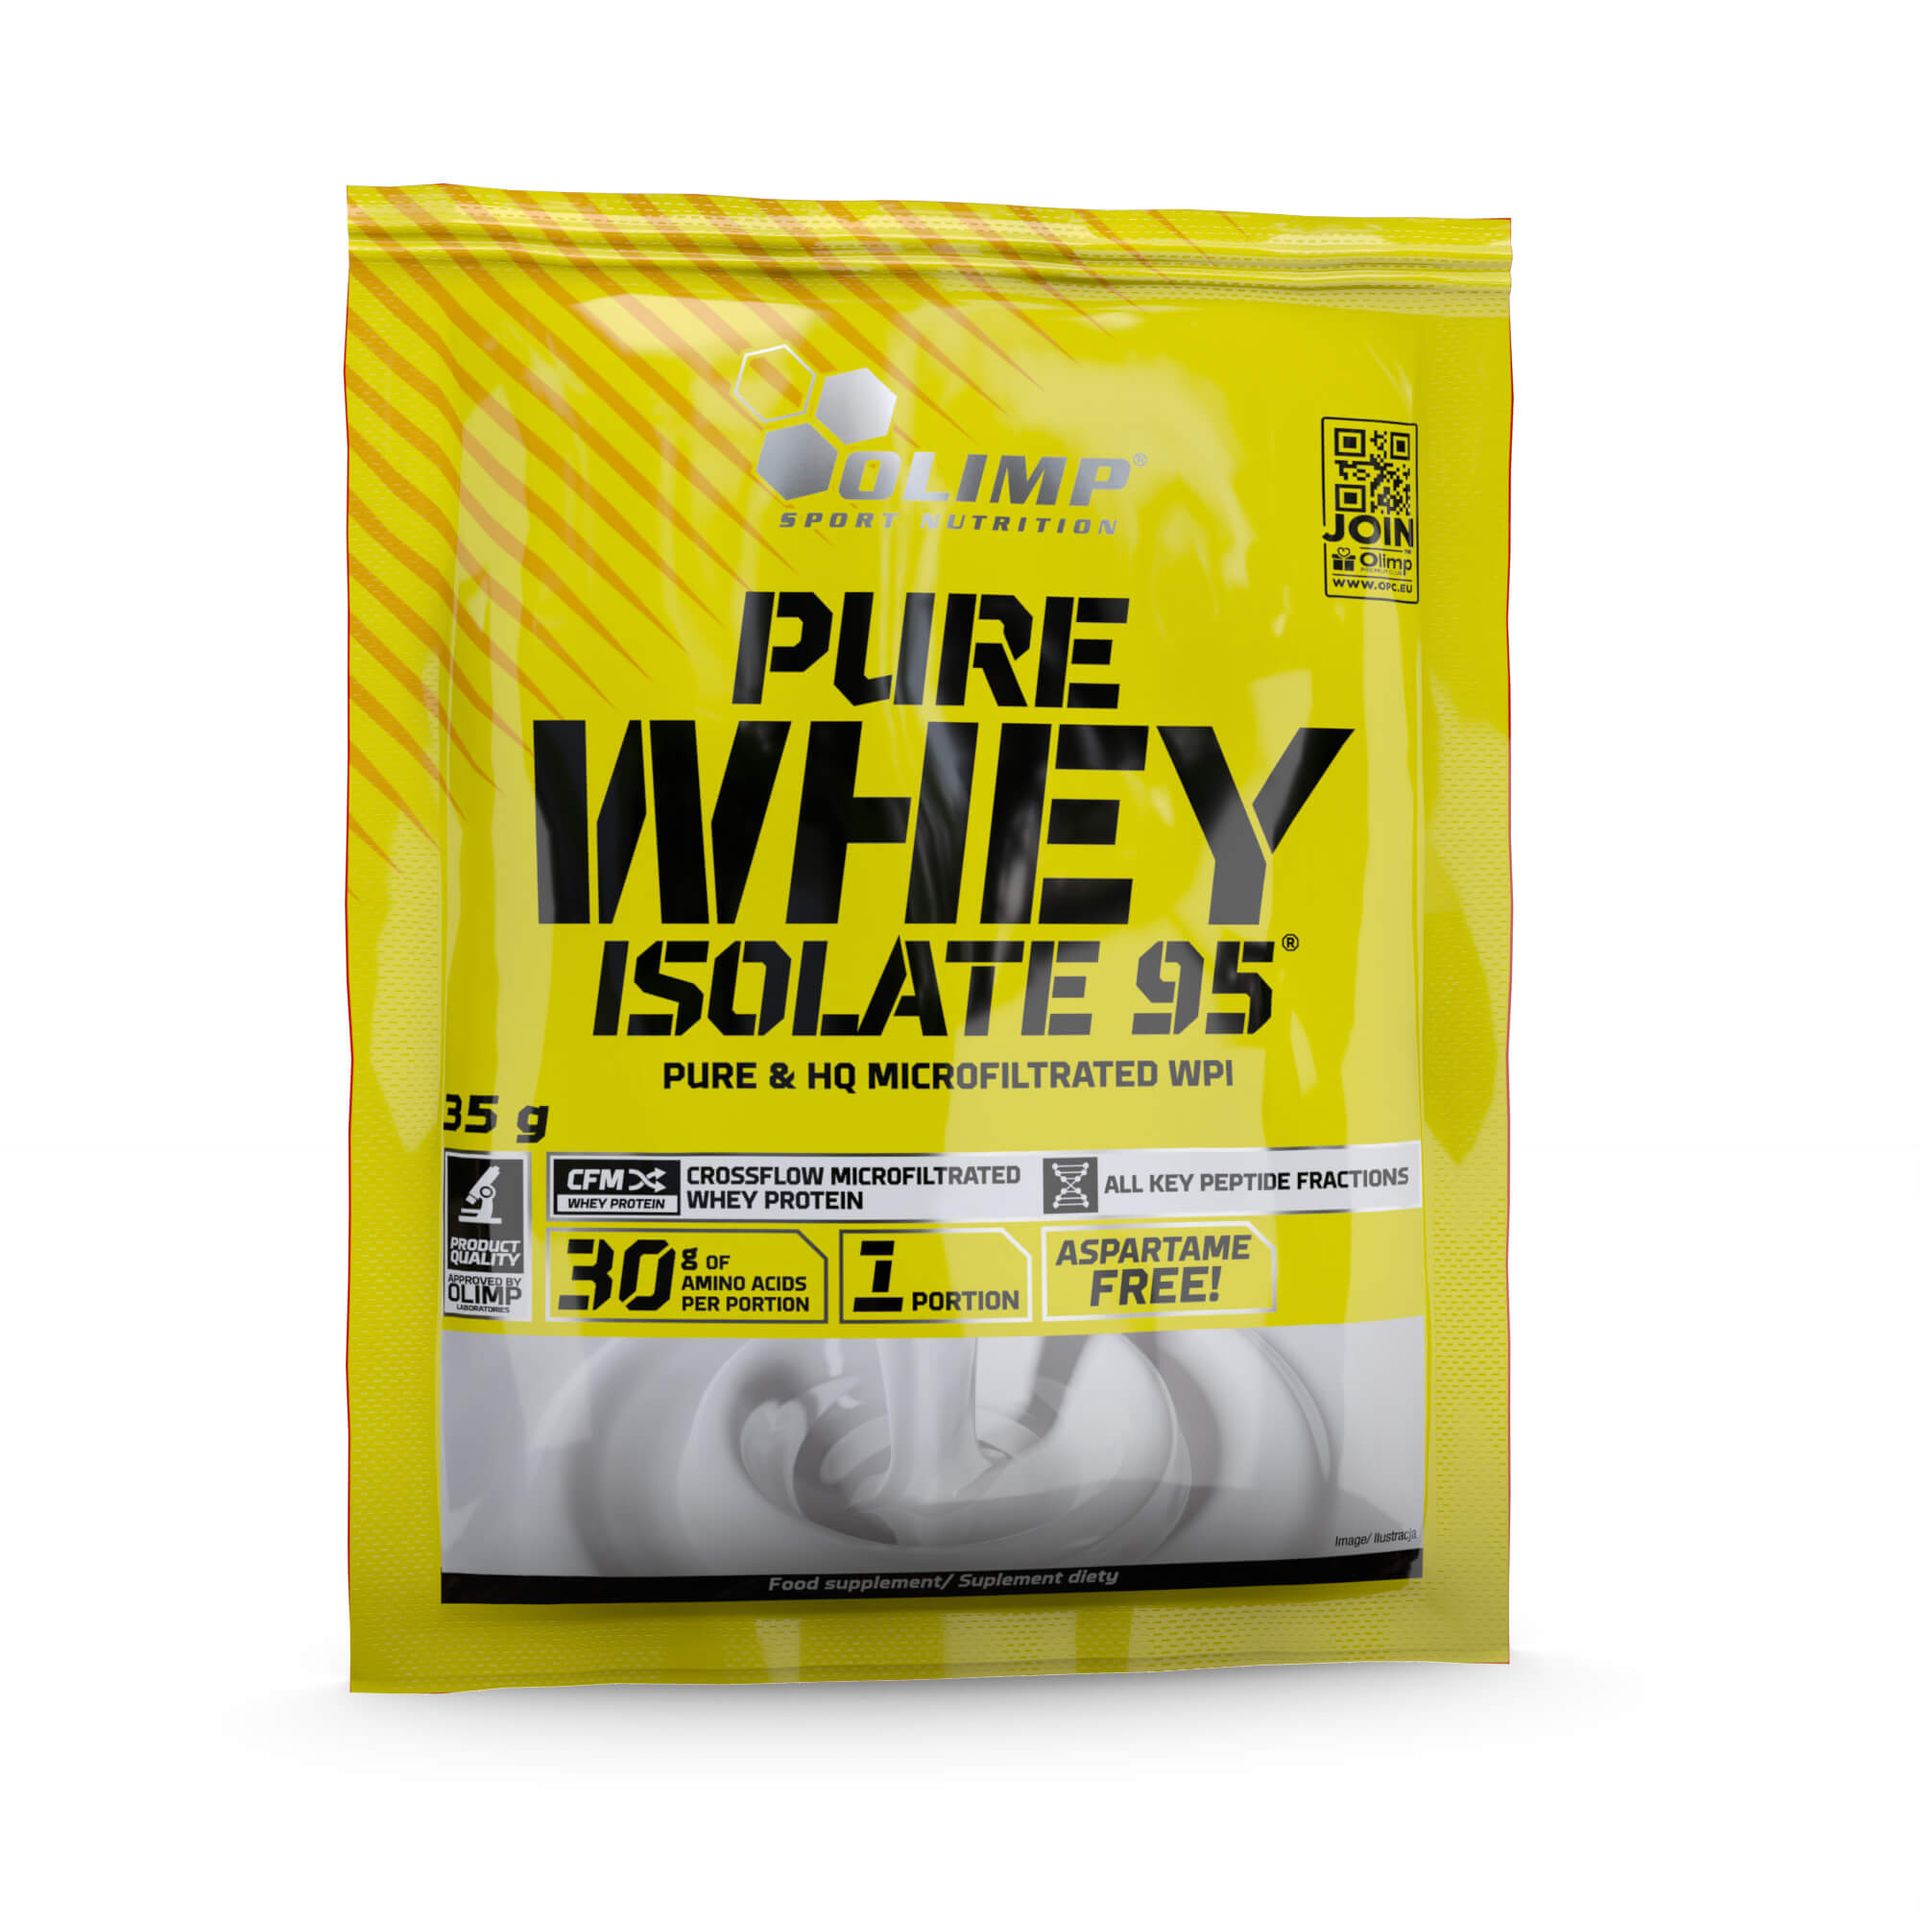 Zdjęcia - Odżywka białkowa Olimp Pure Whey Isolate 95® - 35 g-Chocolate 